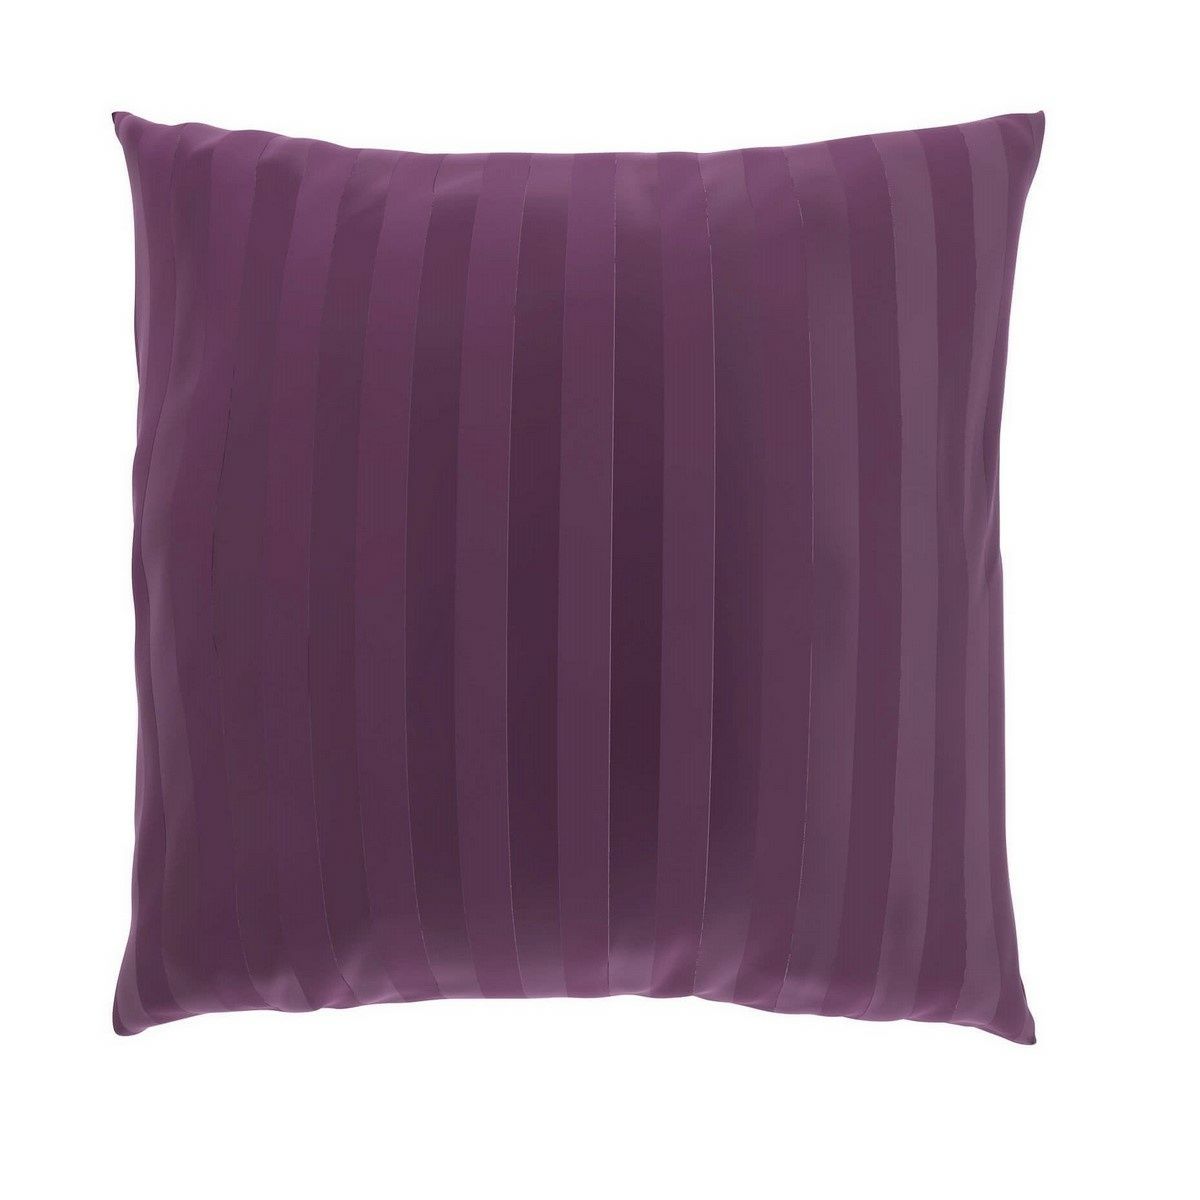 Kvalitex Povlak na polštářek Stripe purpurová, 40 x 40 cm - 4home.cz